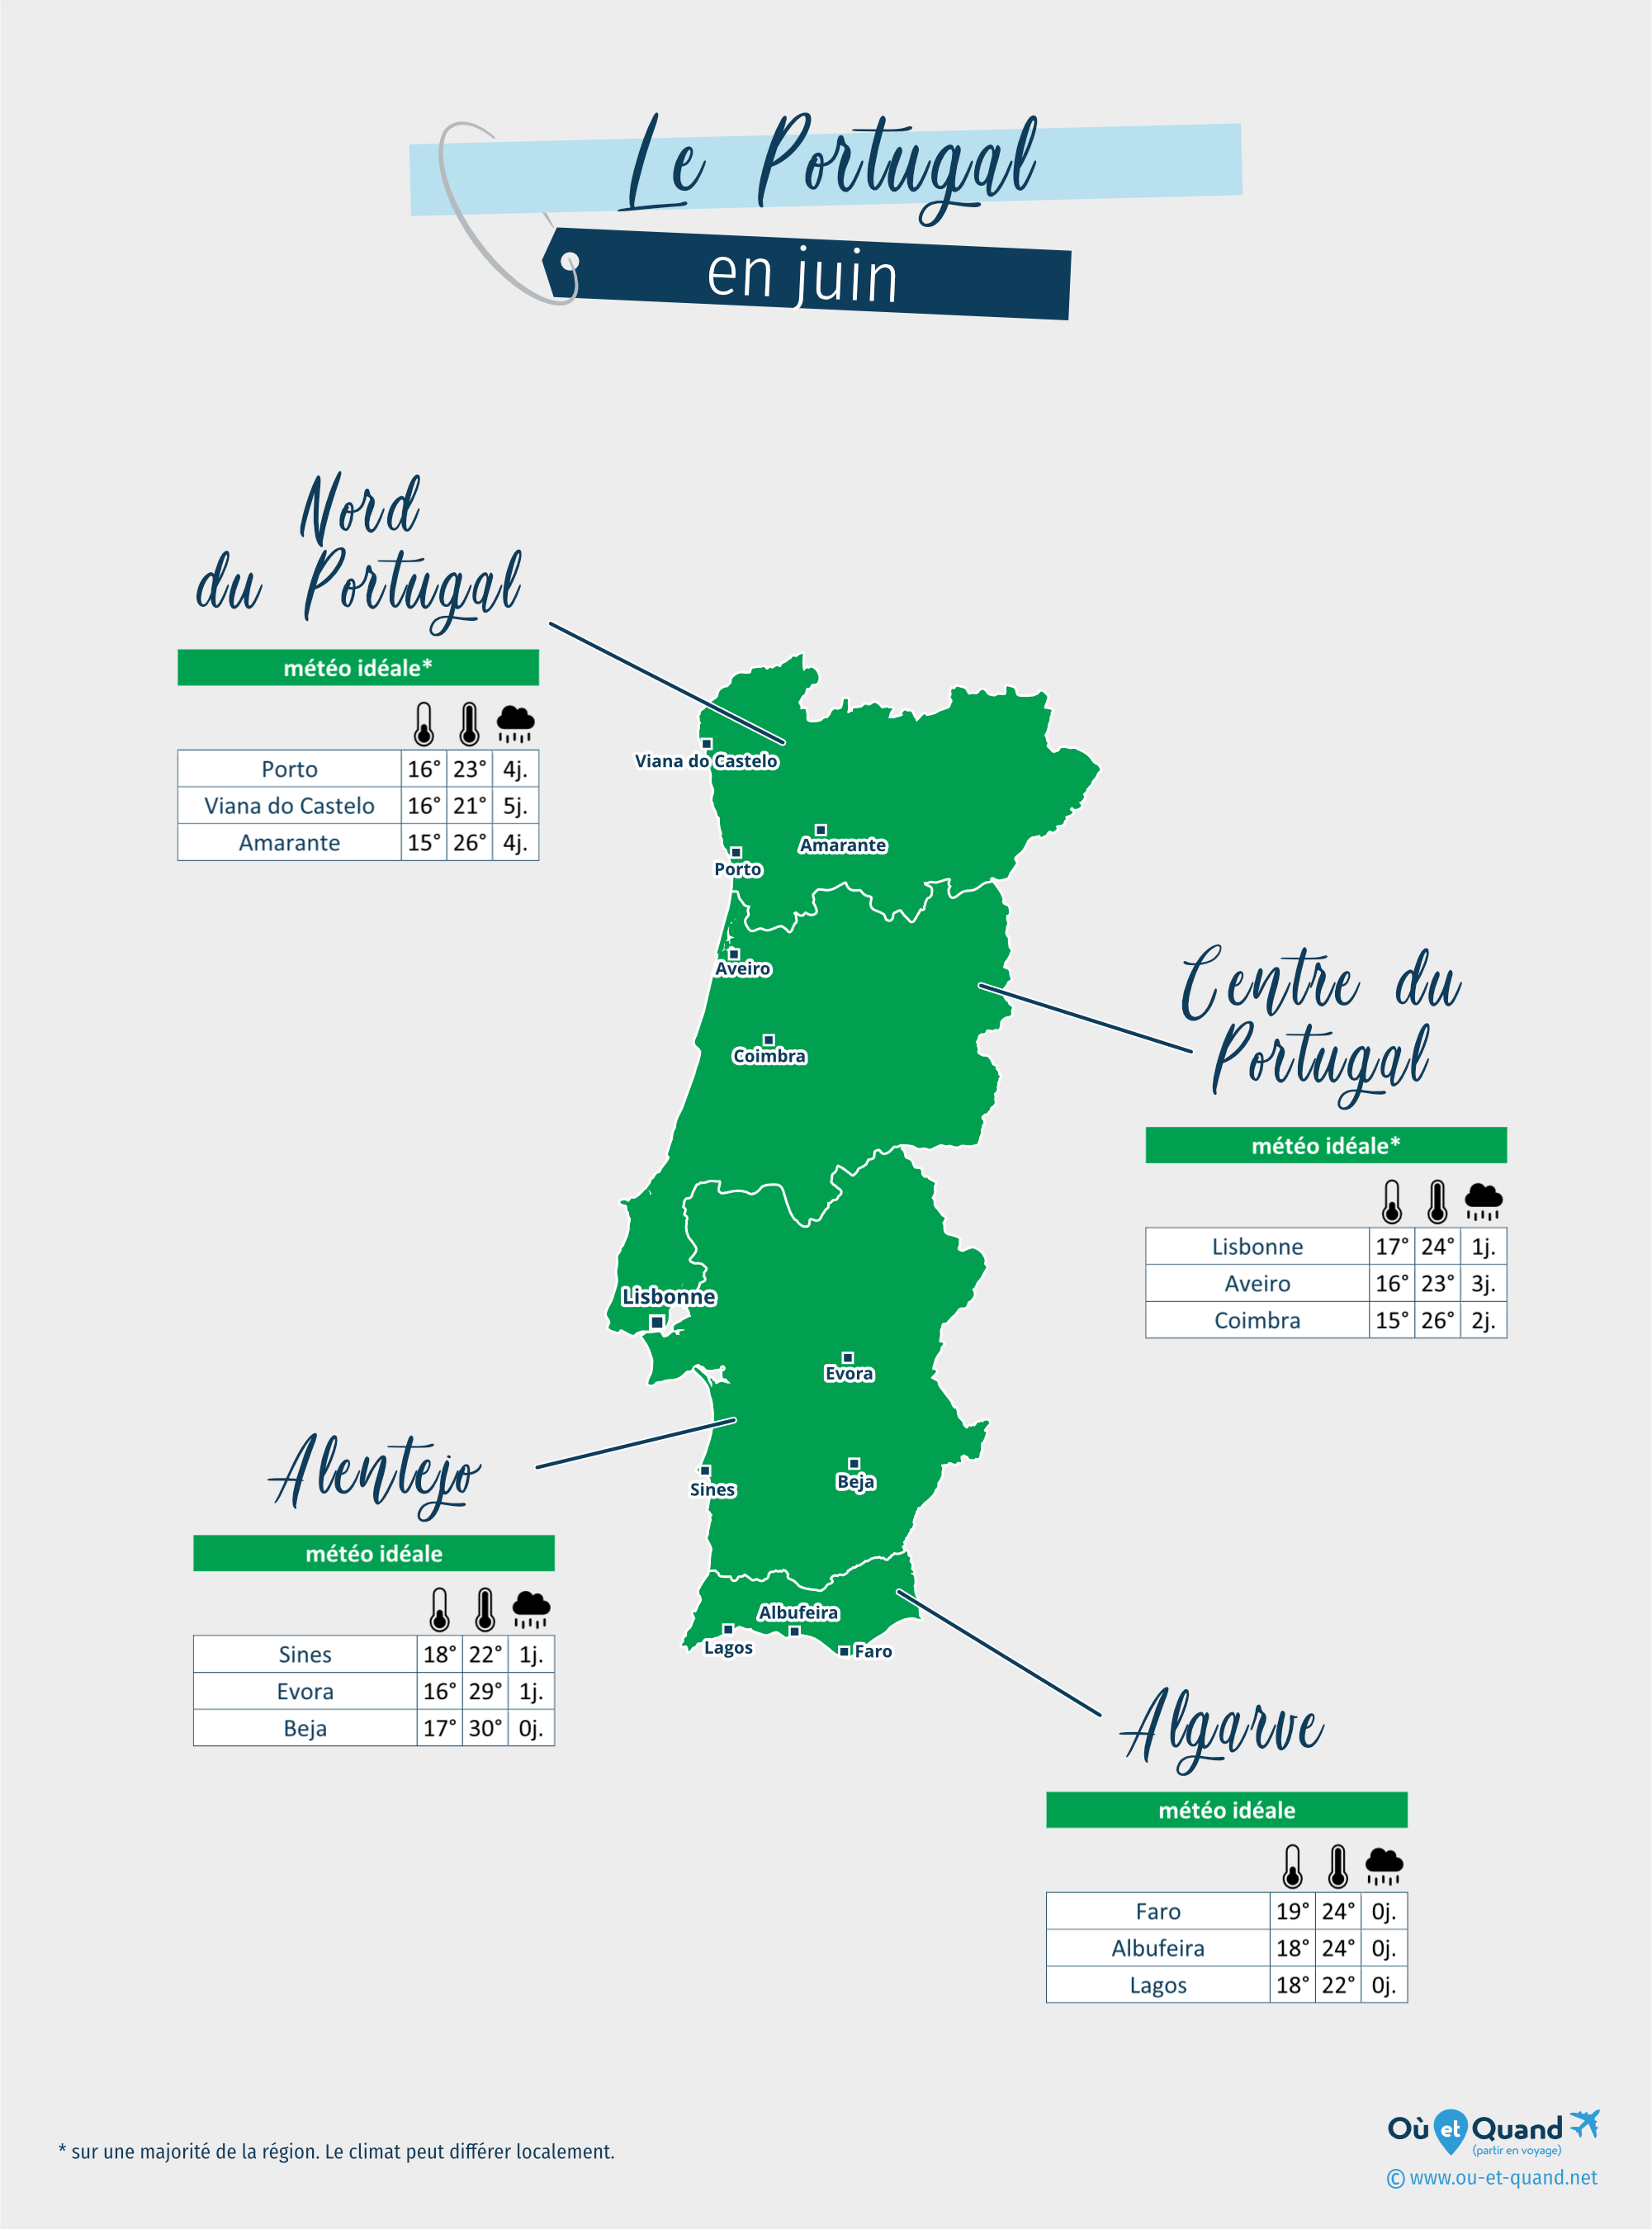 Carte de la météo en juin dans les régions du Portugal